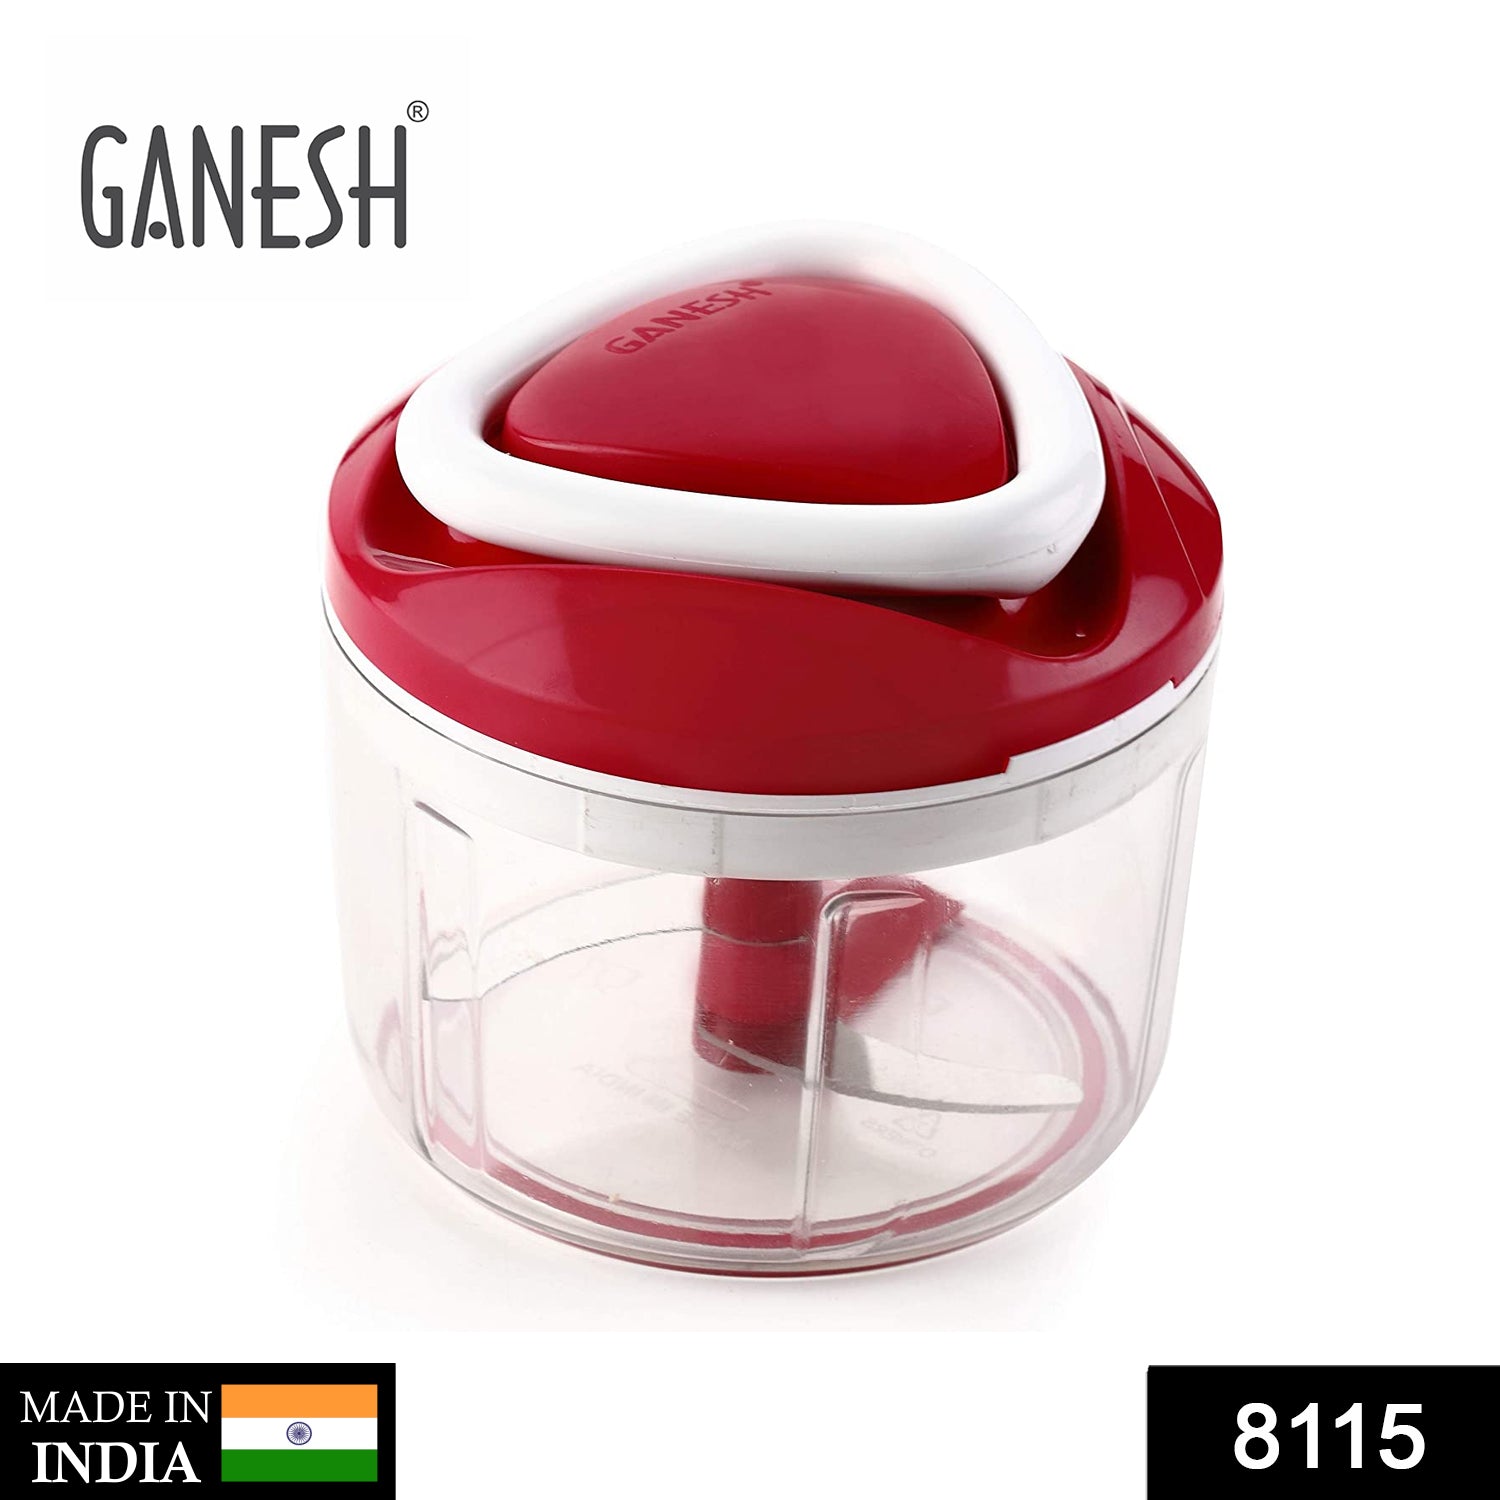 8115 Ganesh Chopper Vegetable Cutter, Red (650 ml) DeoDap